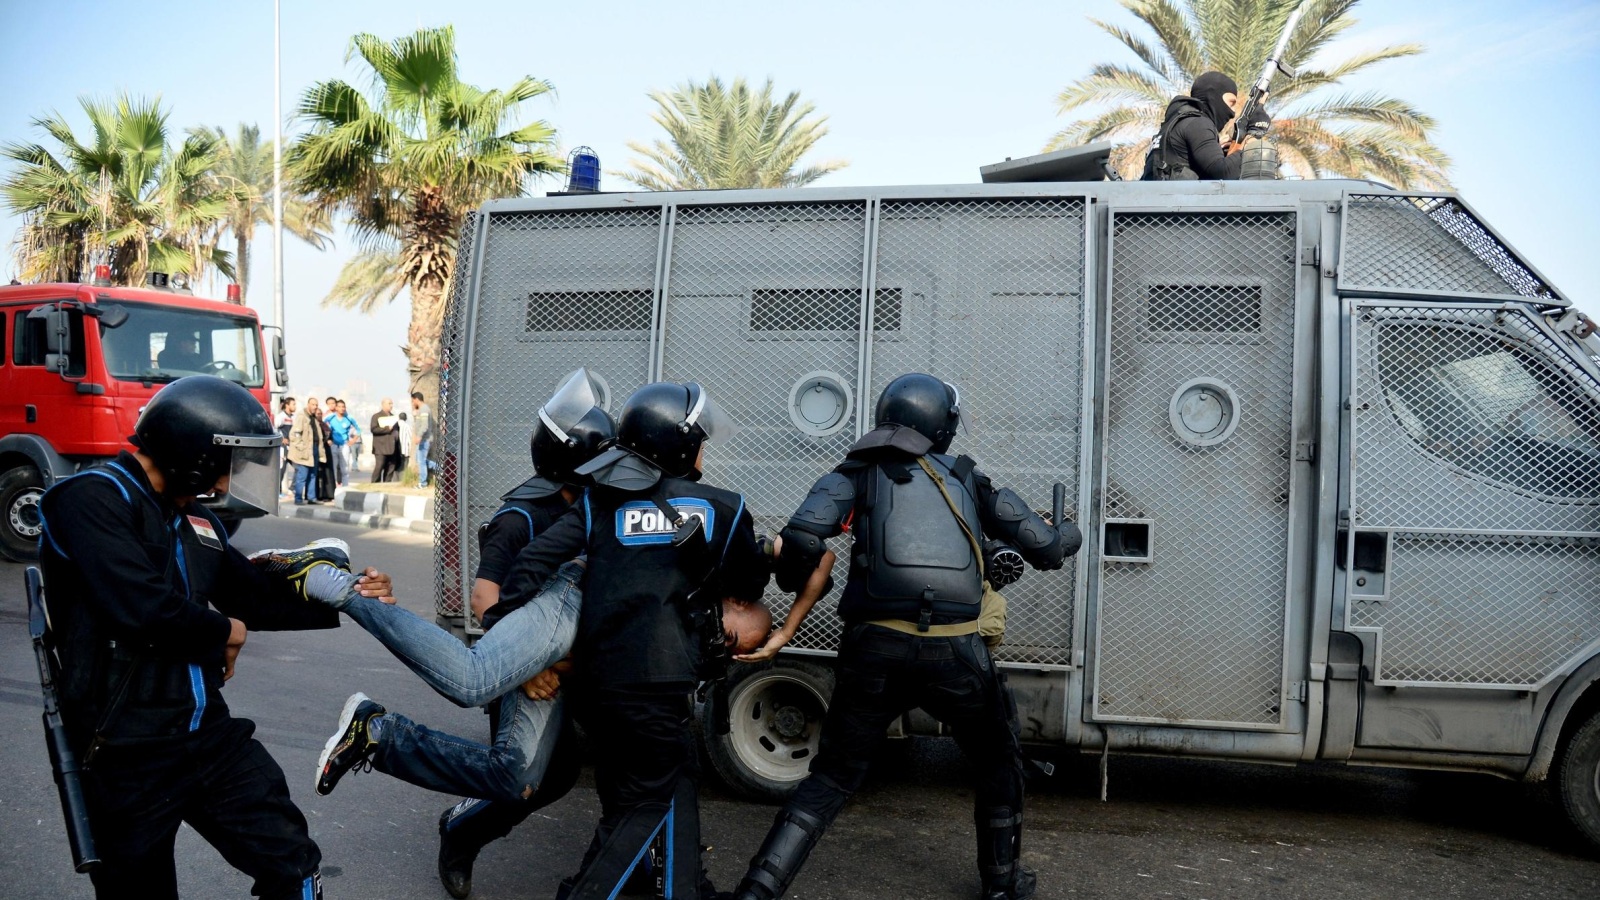 ‪الحكومة الفرنسية أذنت للشركات ببيع أنظمة مراقبة مختلفة إلى السلطات المصرية لاعتراض الاتصالات والتحكم في الشبكات الاجتماعية‬ (أسوشيتد برس)